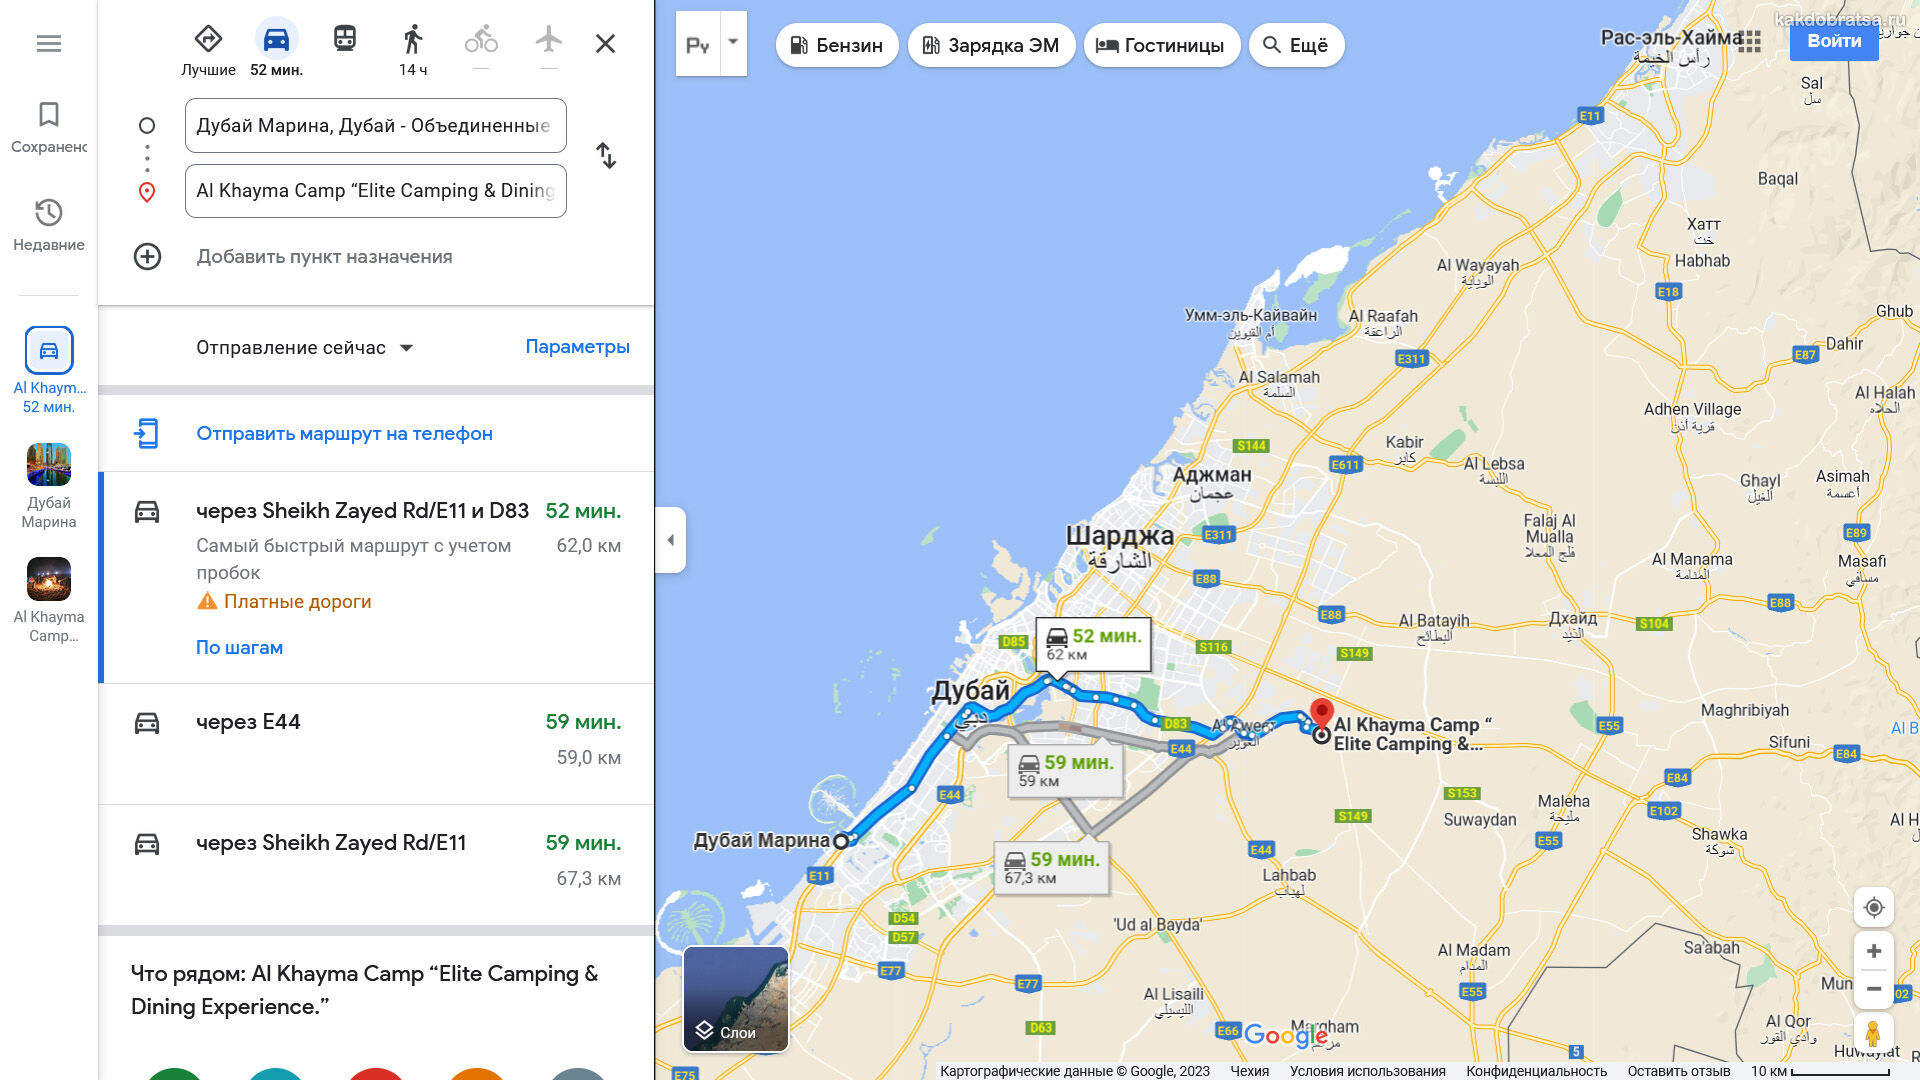 Платные дороги в Дубае на карте. Самостоятельный маршрут по Дубаю на карте. Keturah Reserve Dubai Map. Карты в дубае принимают